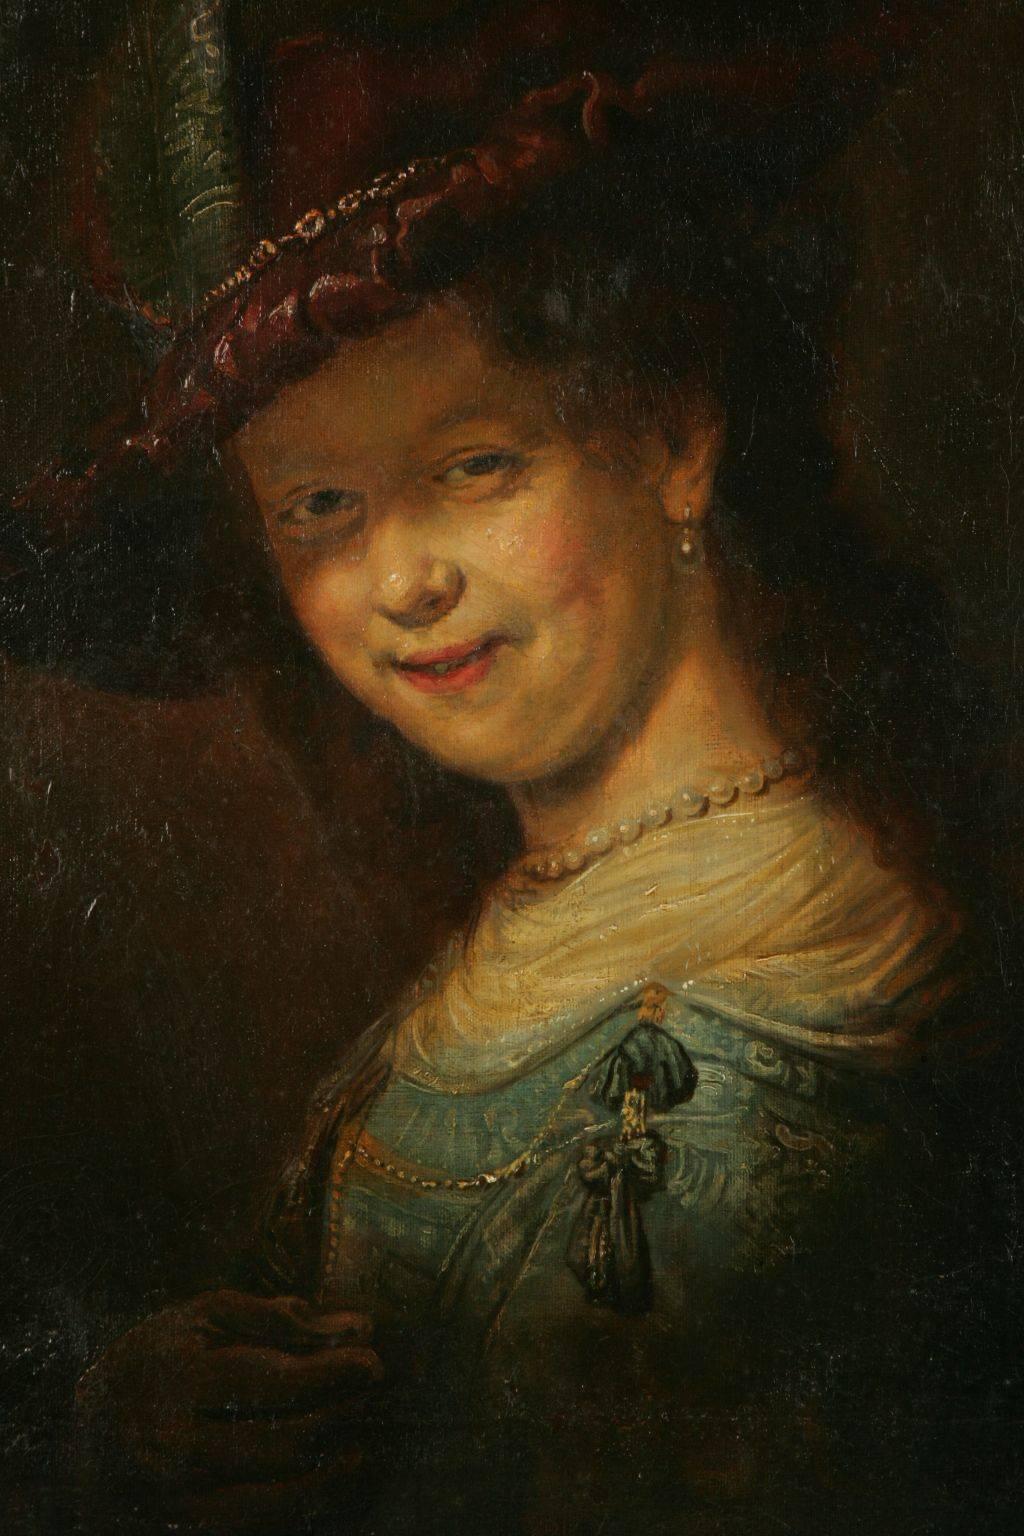 Saskia lächelnd mit Federstab (um 1633).
Öl auf Leinwand. Außergewöhnlich schönes Exemplar nach Rembrandt, rückseitig betitelt - Kopie nach Nr. 1556, der Königlichen Gemäldegalerie zu Dresden 1910. Porträt von Saskia van Uiljlenburgh als junges